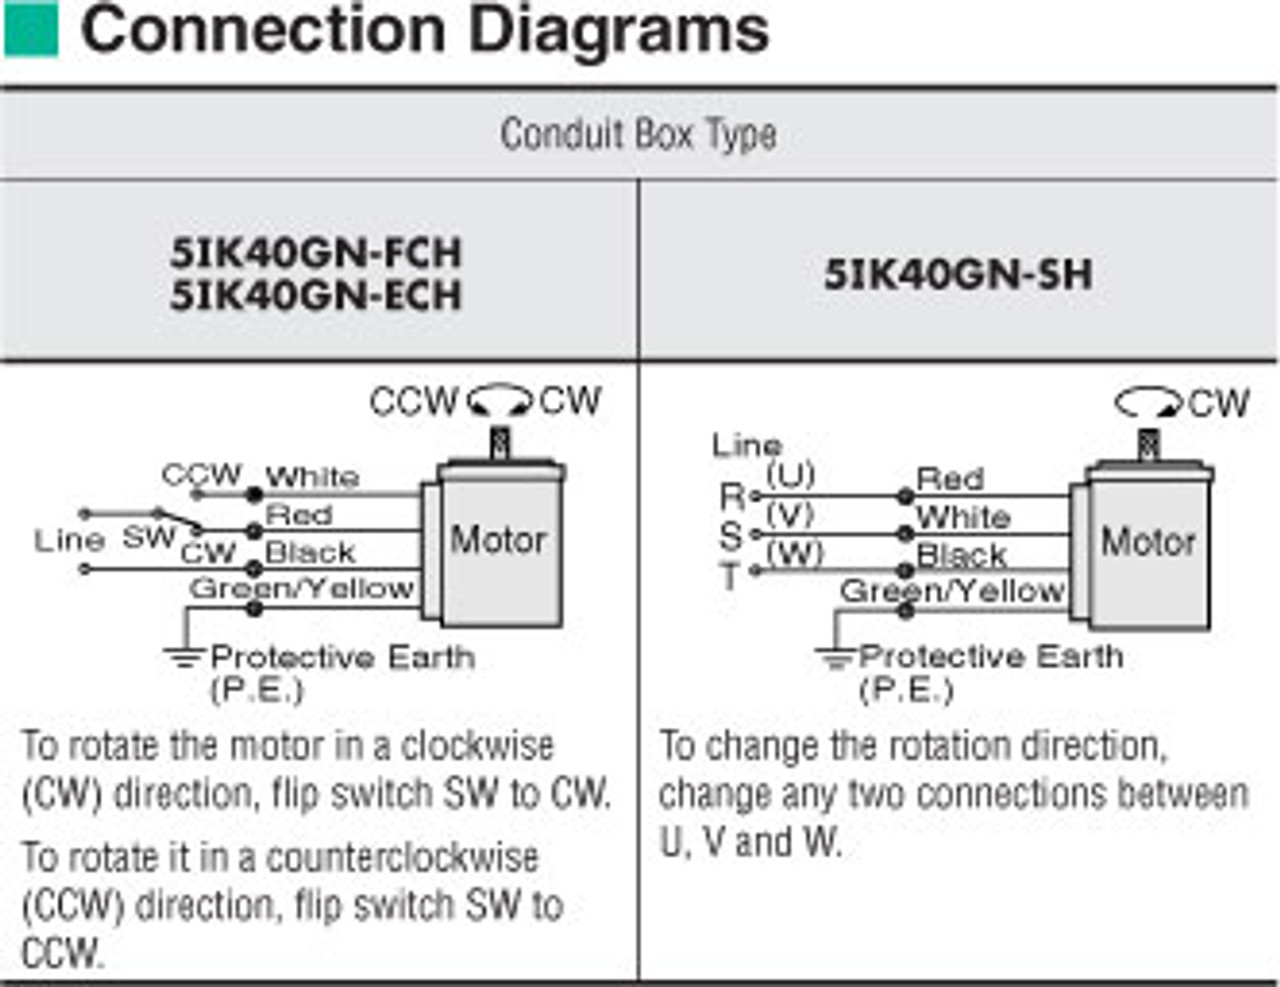 5IK40GN-FCH / 5GN75KA - Connection